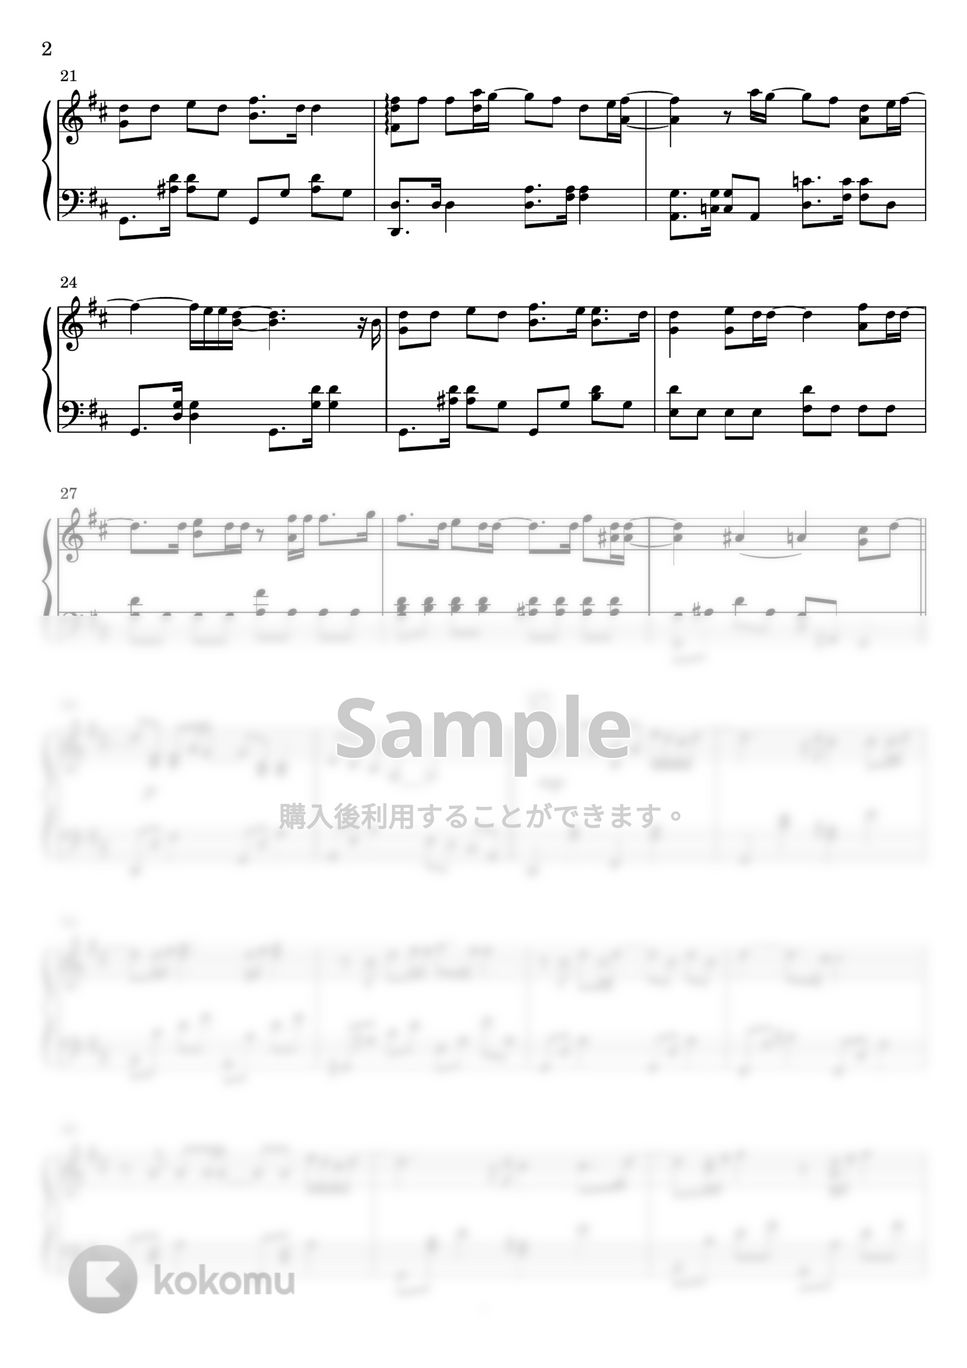 DISH// - 五明後日 (ごあさって)フルver. (ピアノソロ) by Miz